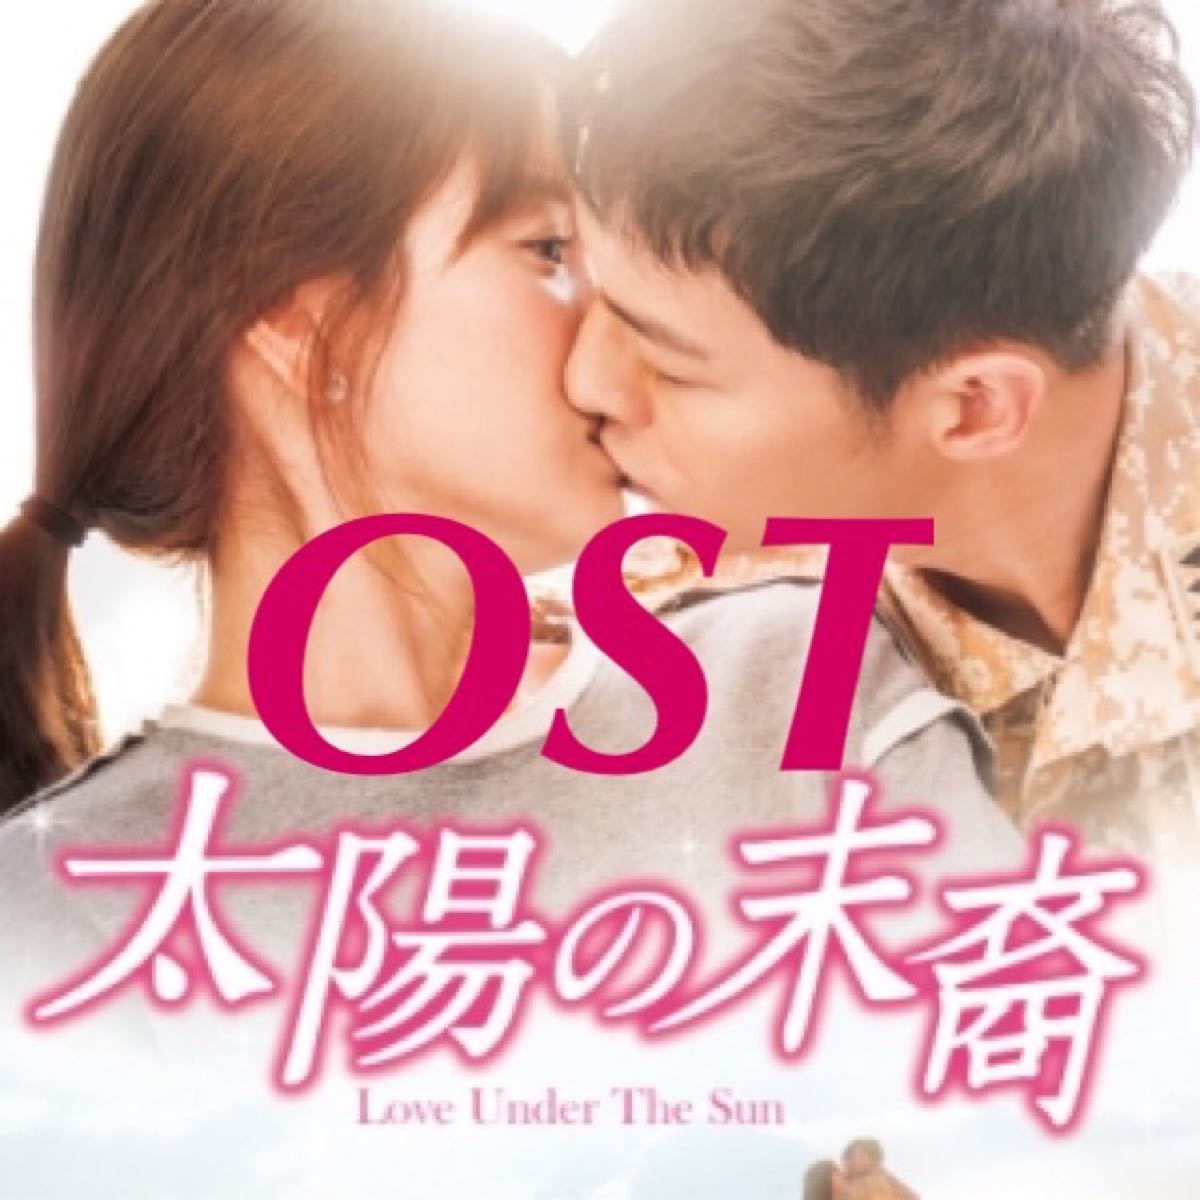 太陽の末裔  OST  DVD  レーベル有り  ソン・ヘギョ  ソン・ジュンギ